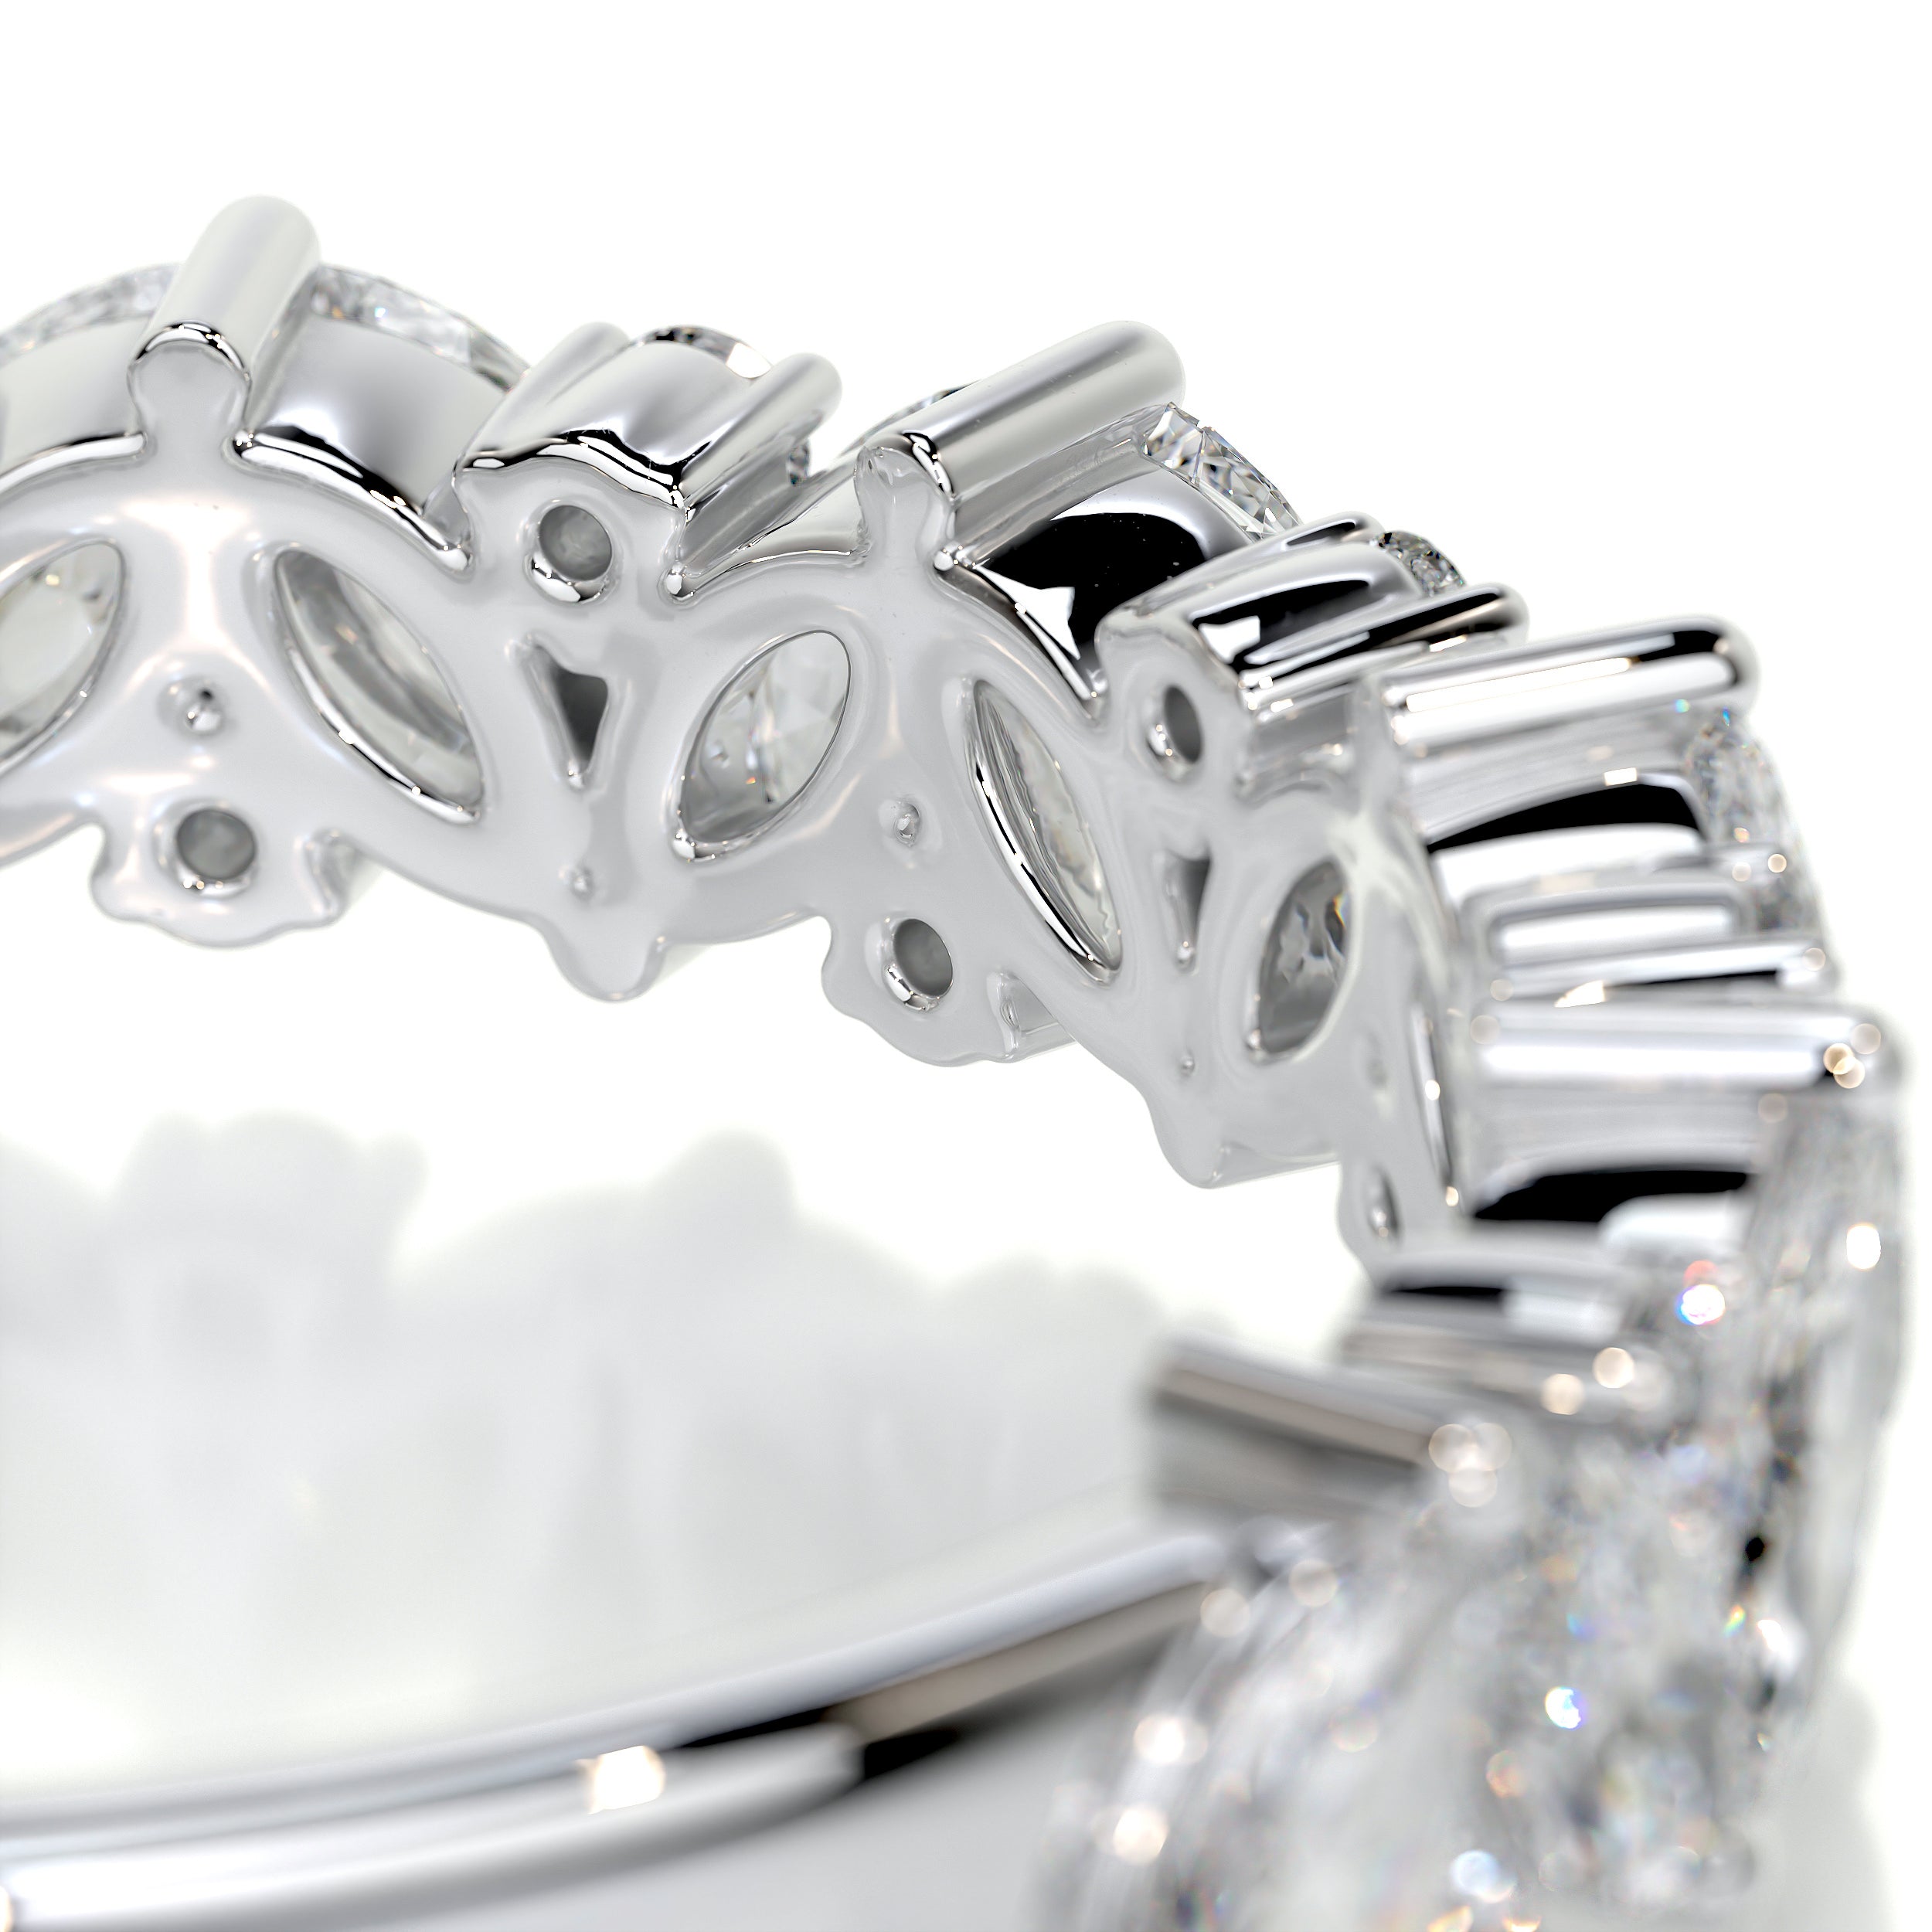 Regina Diamond Wedding Ring   (0.85 Carat) -18K White Gold